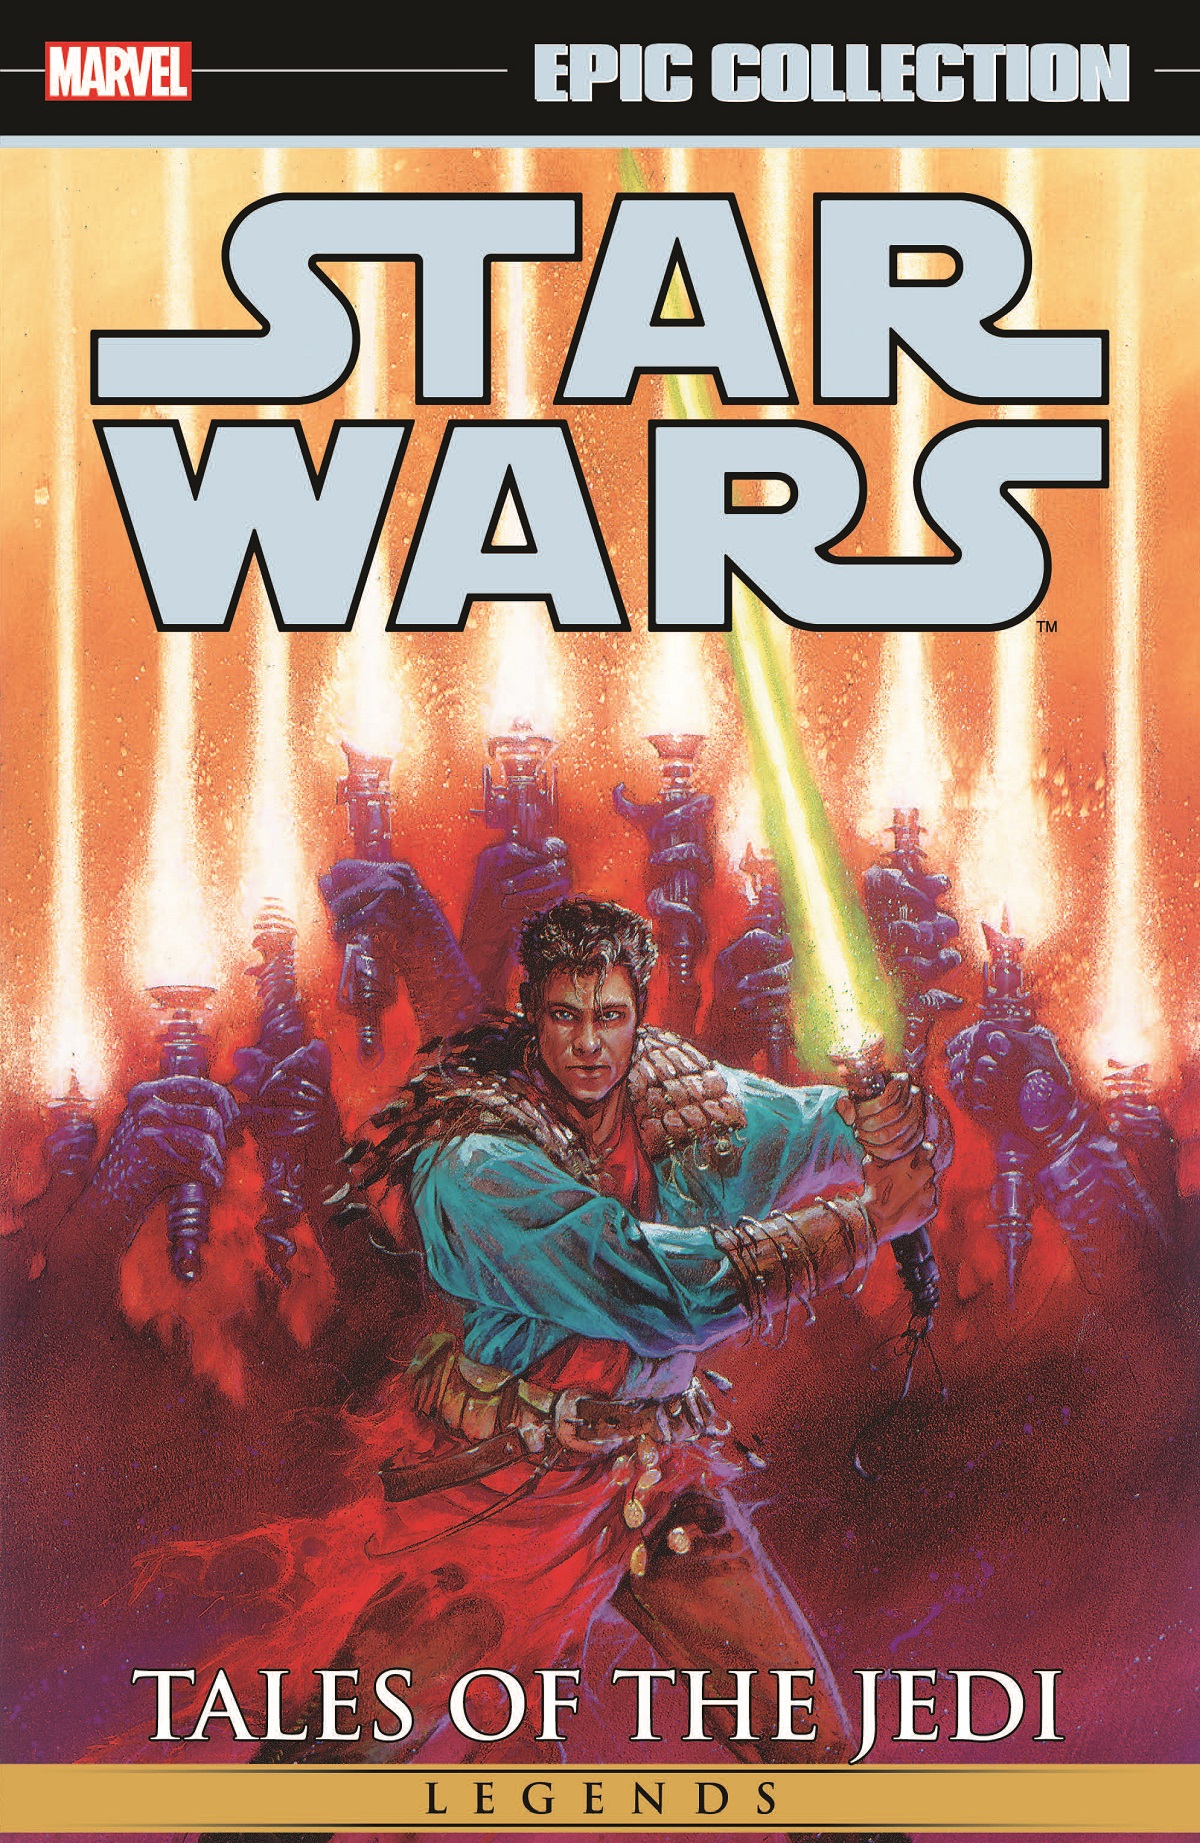 Star wars tales of the jedi comic